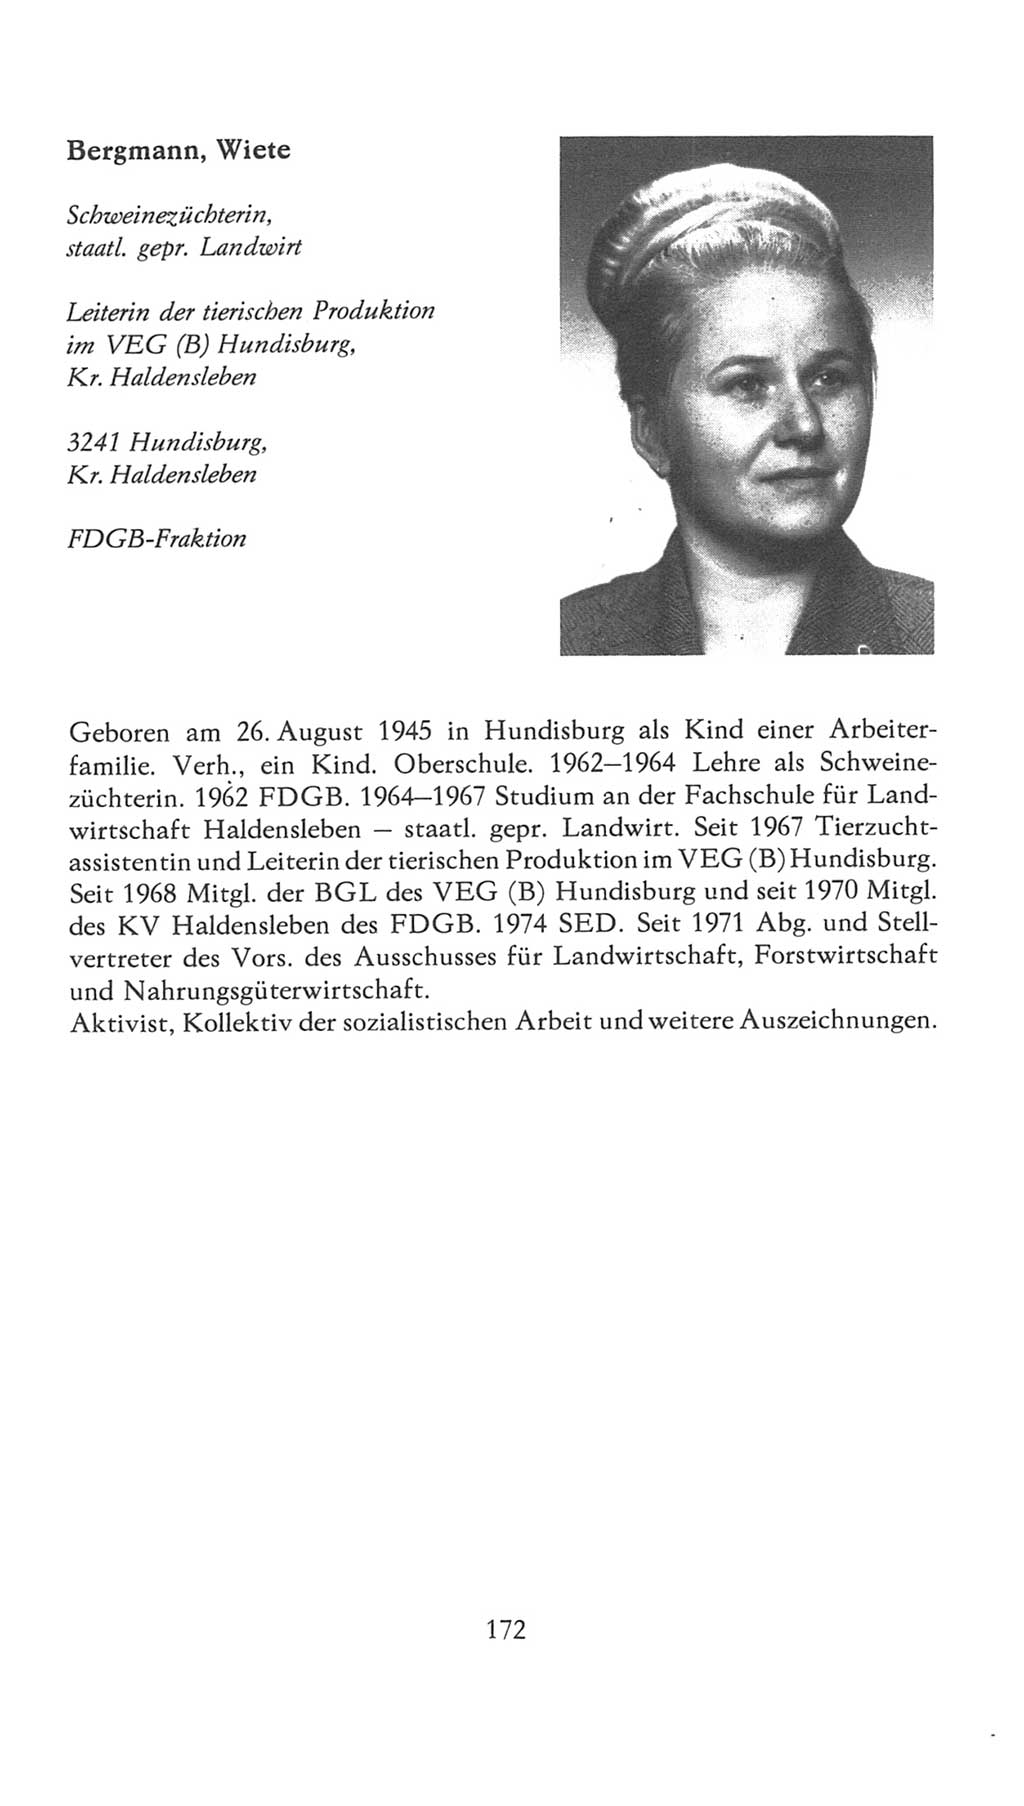 Volkskammer (VK) der Deutschen Demokratischen Republik (DDR), 7. Wahlperiode 1976-1981, Seite 172 (VK. DDR 7. WP. 1976-1981, S. 172)